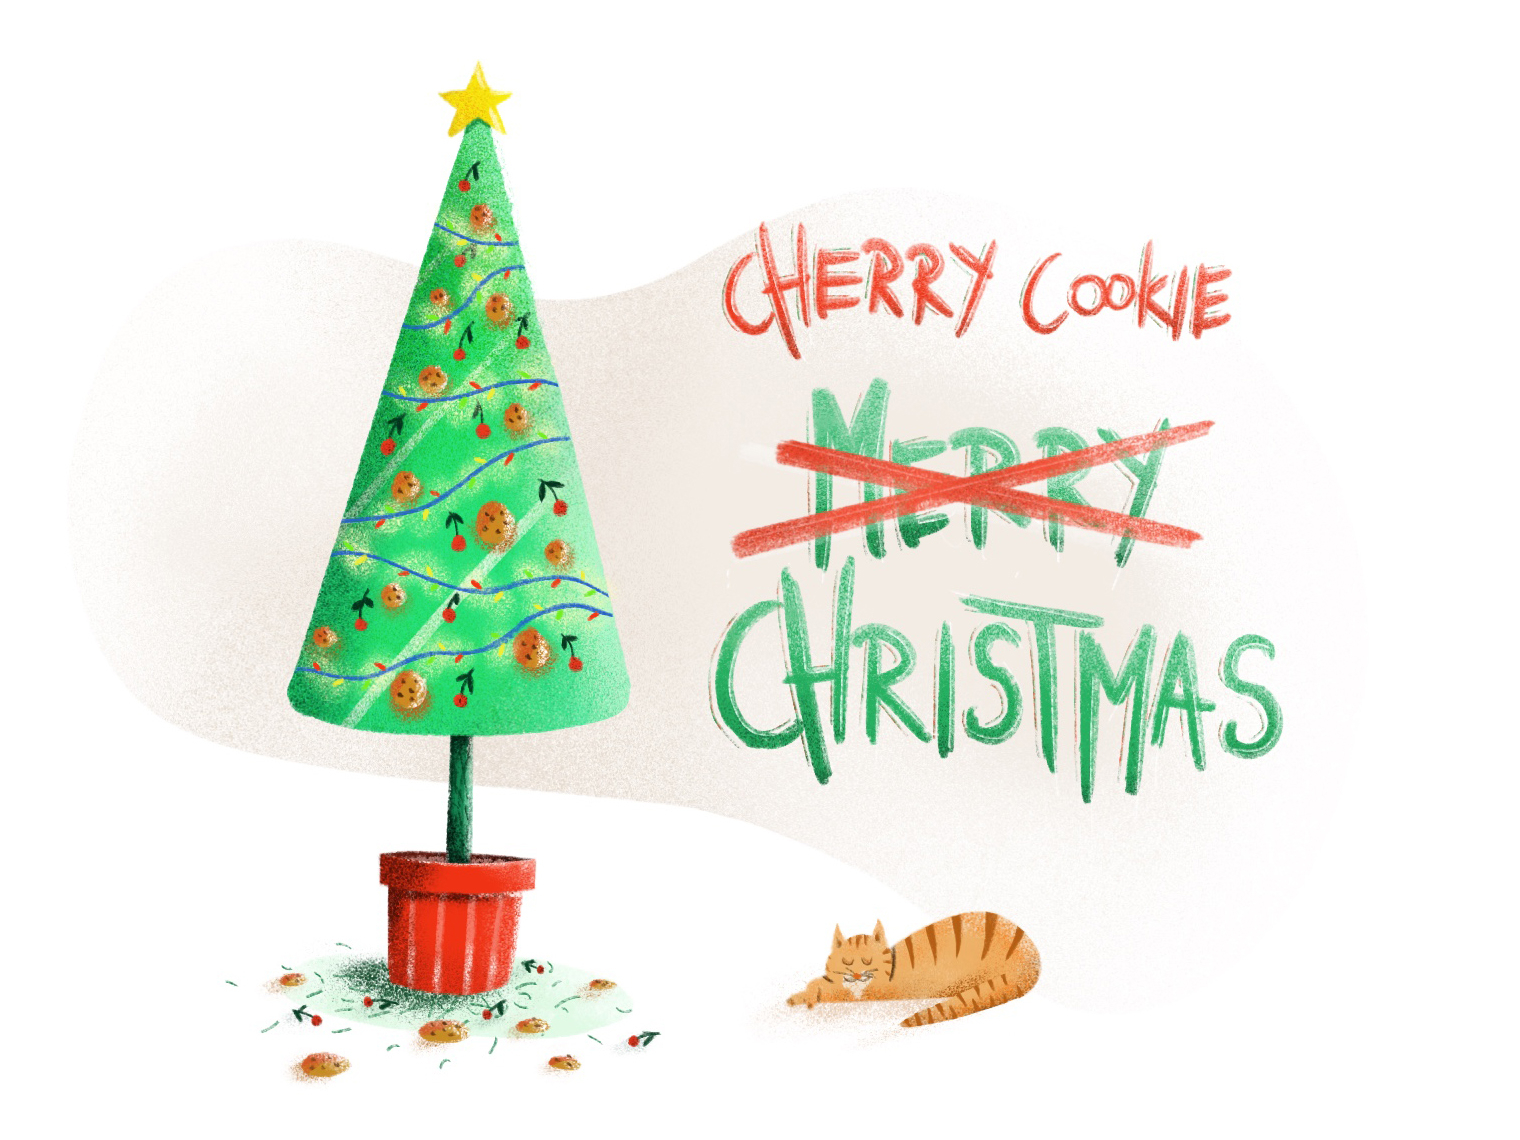 Cherry Cookie Christmas By Paweł Czamański On Dribbble